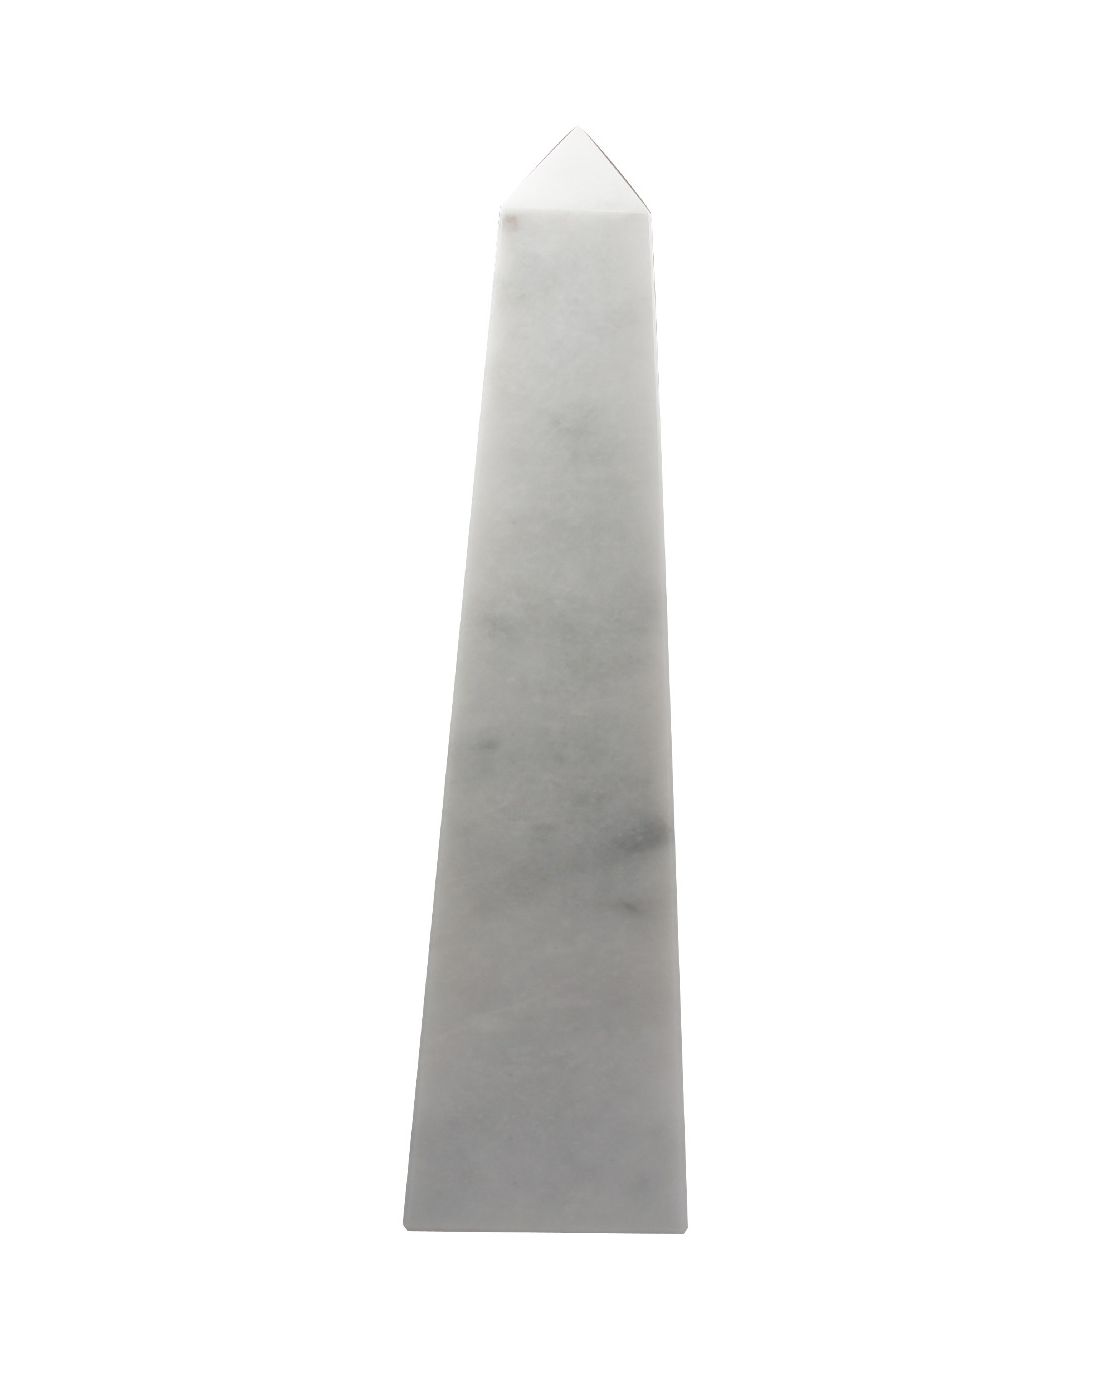 Straight Obelisk White Marble